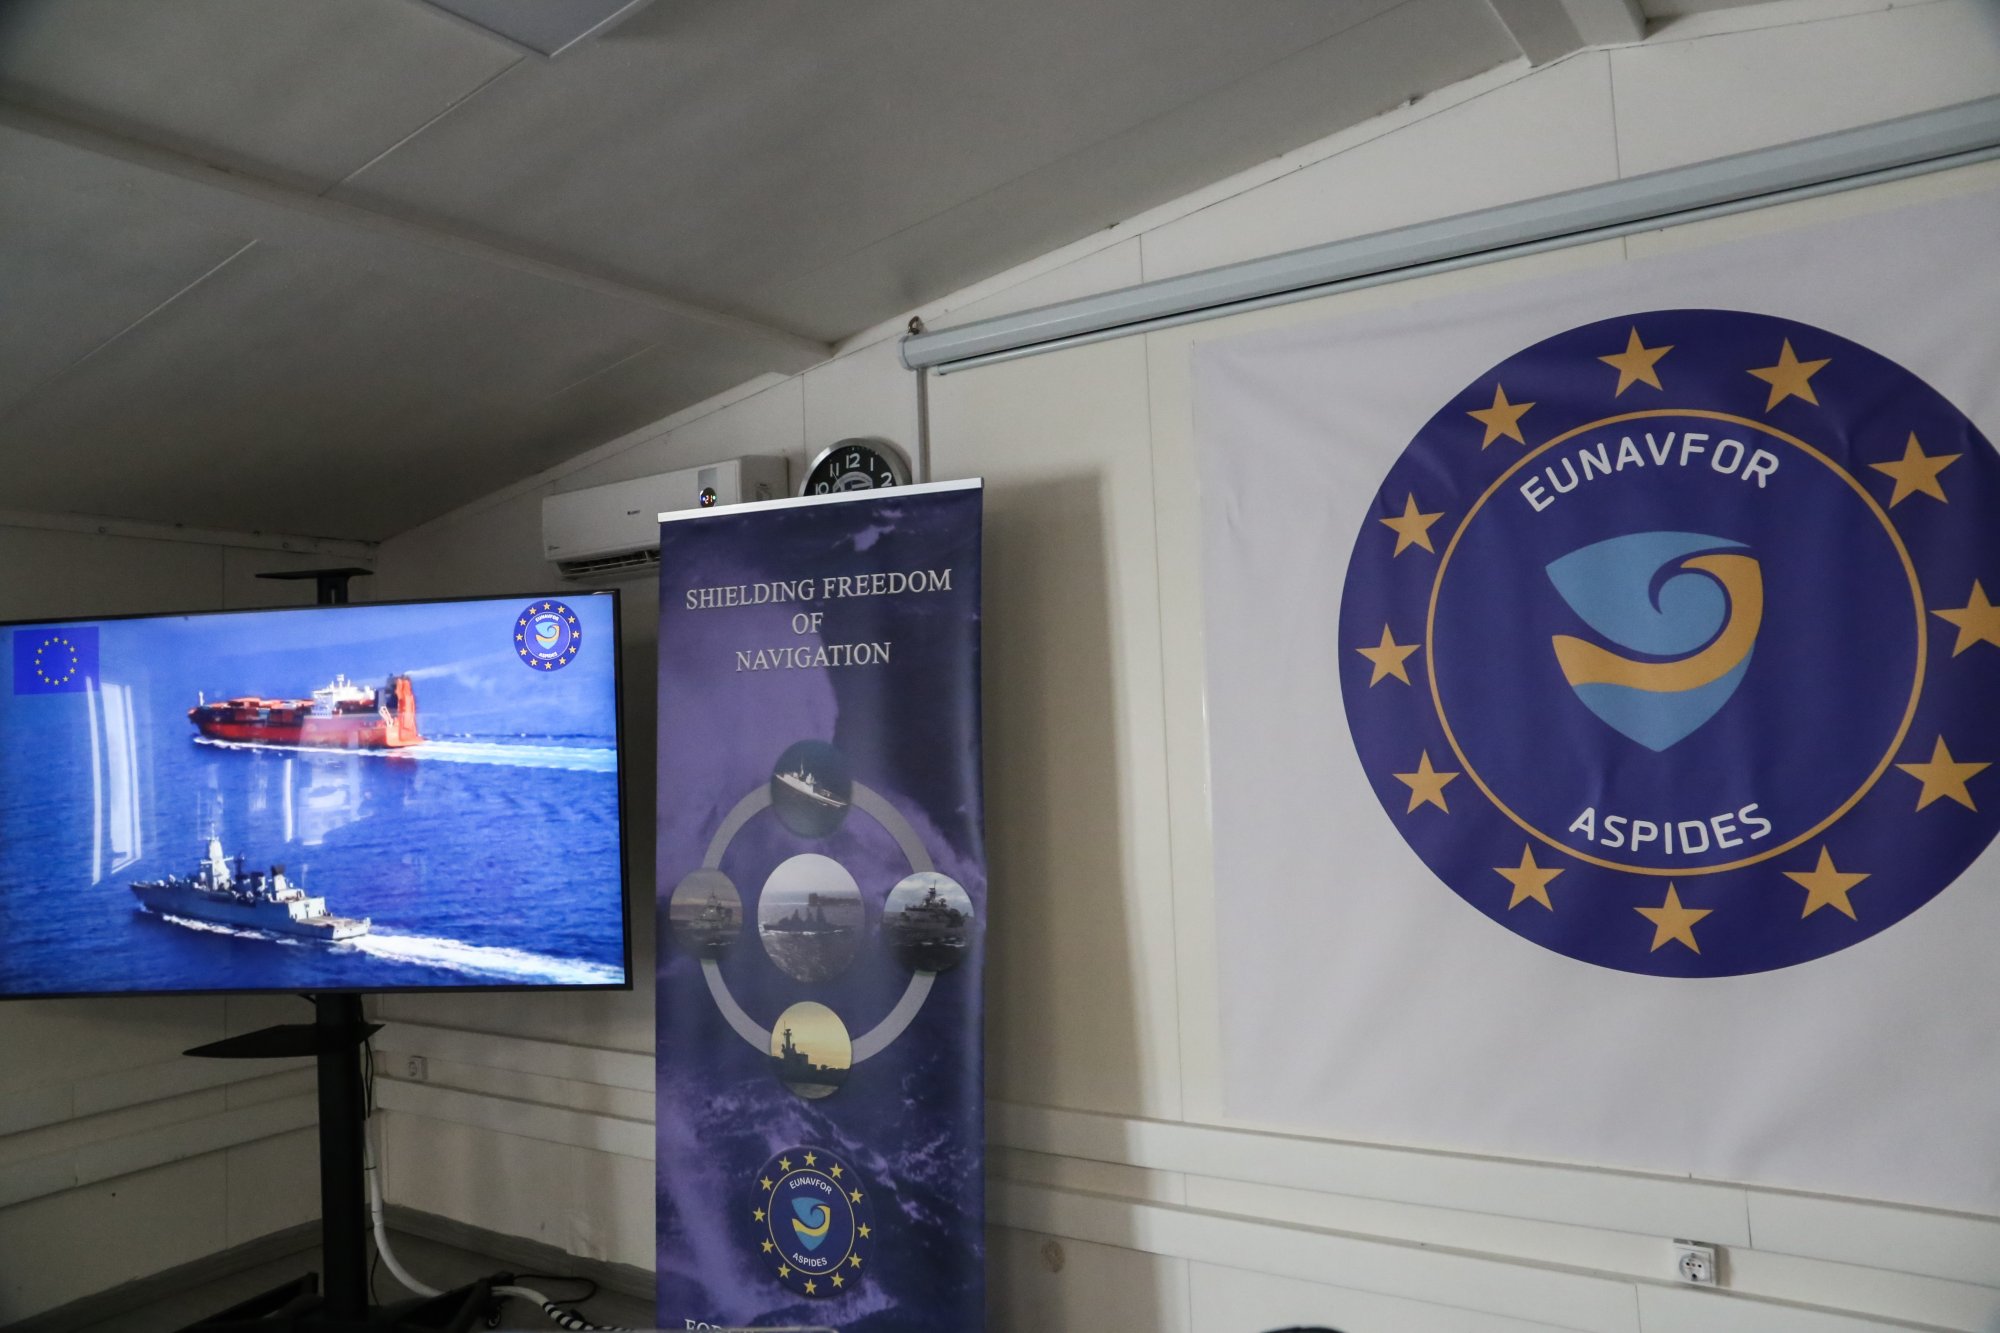 Ζοζέπ Μπορέλ: Επίσκεψη στο στρατηγείο Λάρισας - «Η ΕΕ μπορεί να δράσει αποτελεσματικά ως ναυτική δύναμη ασφάλειας»